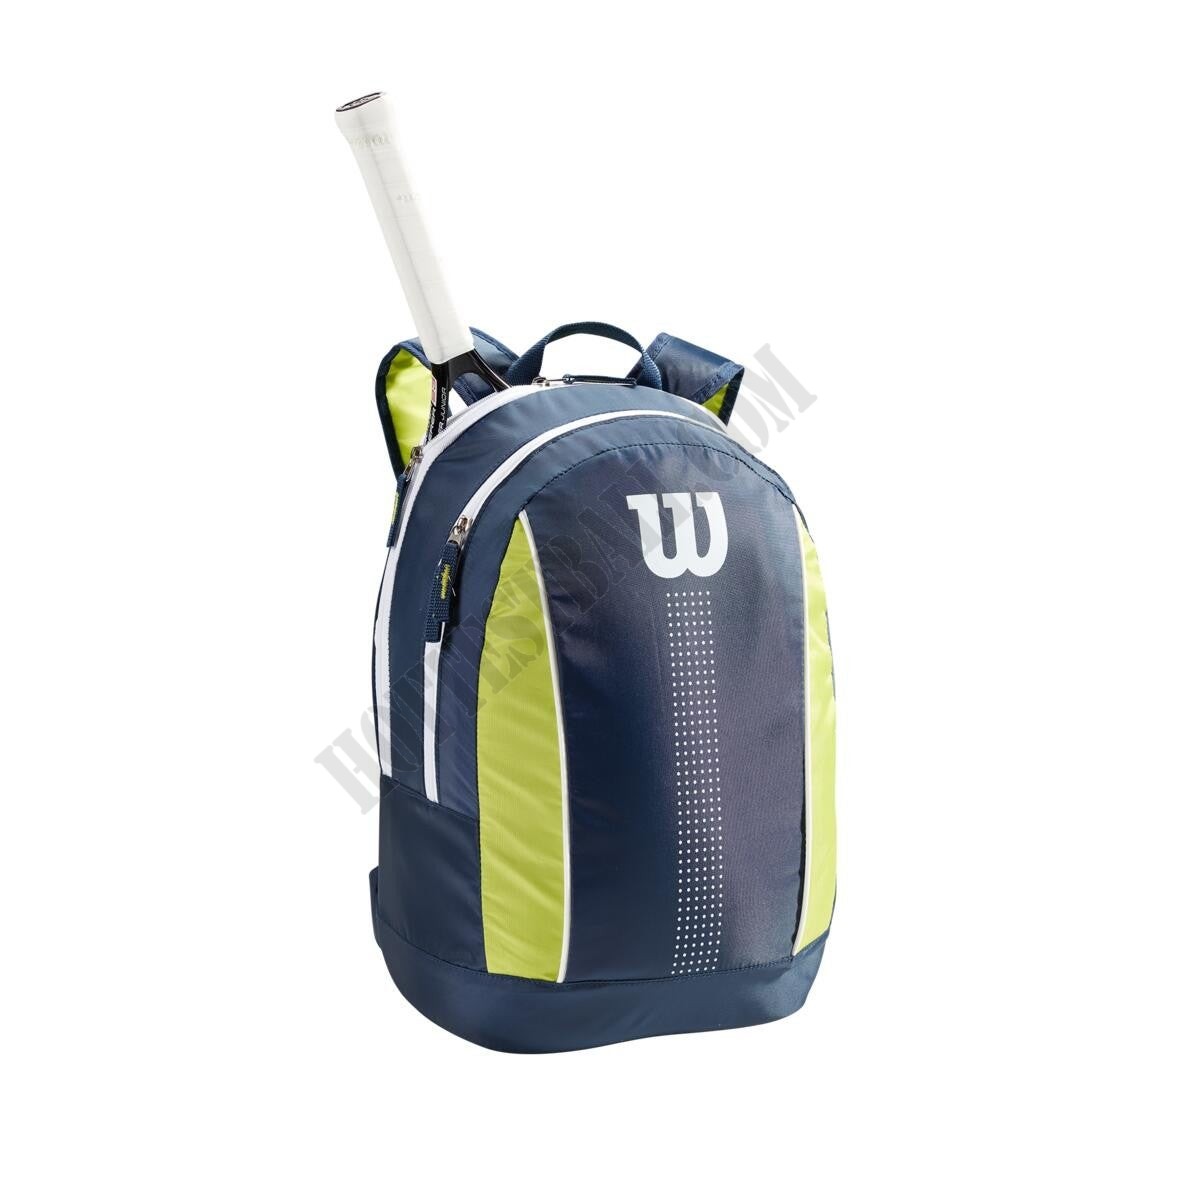 Junior Backpack - Wilson Discount Store - Junior Backpack - Wilson Discount Store